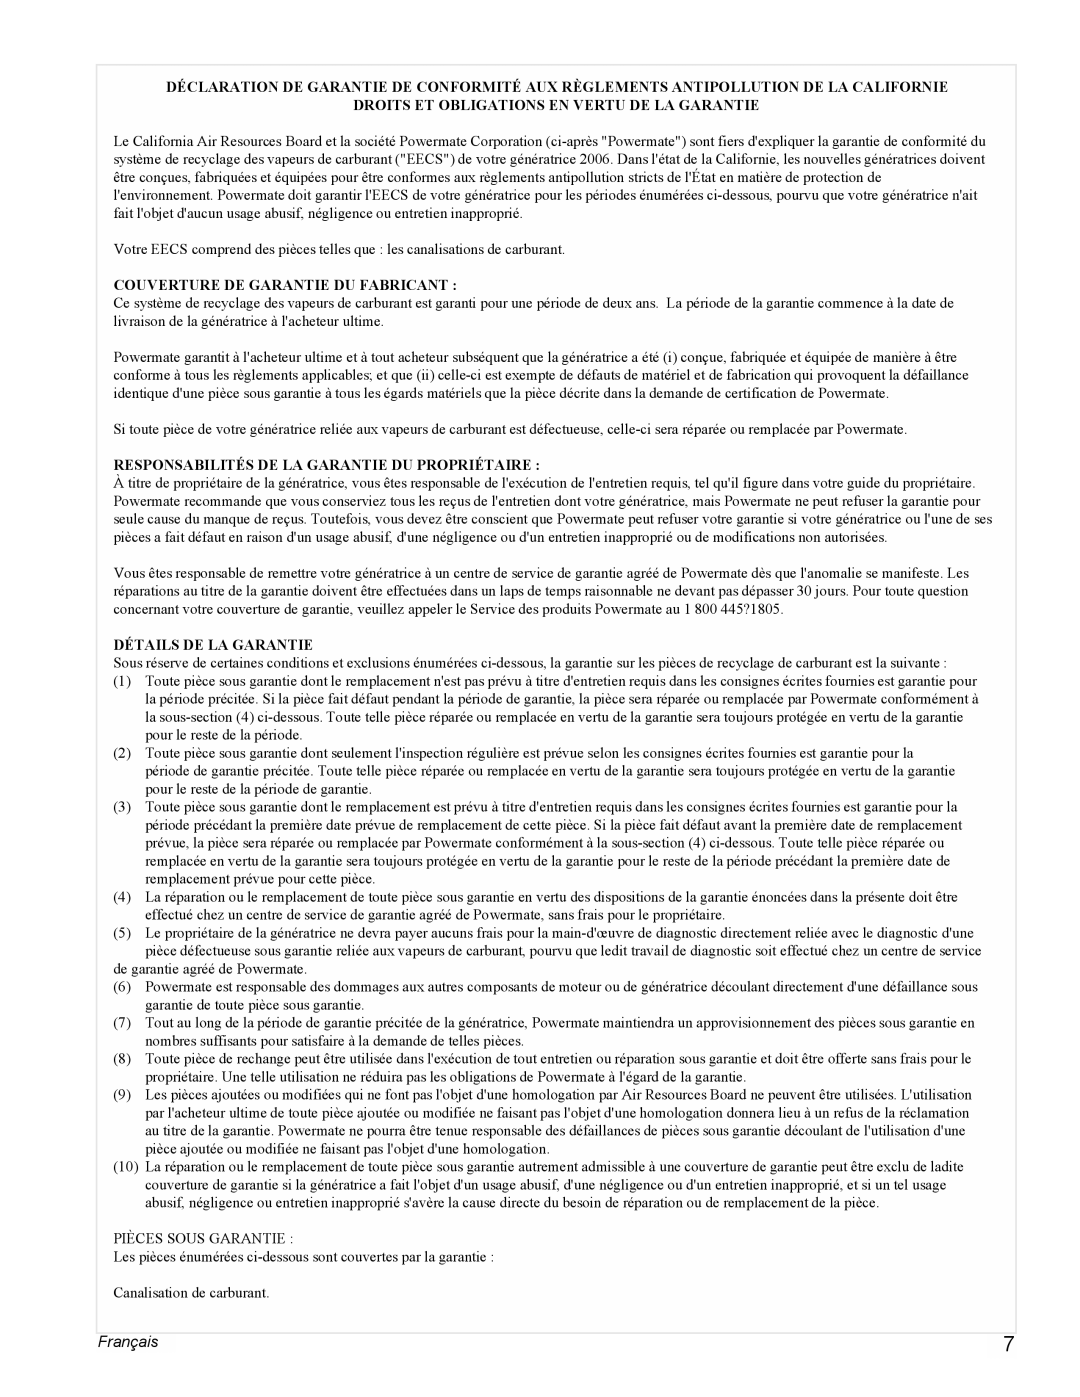 Powermate PMC496500 manual Français, Droits Et Obligations En Vertu De La Garantie, Couverture De Garantie Du Fabricant 